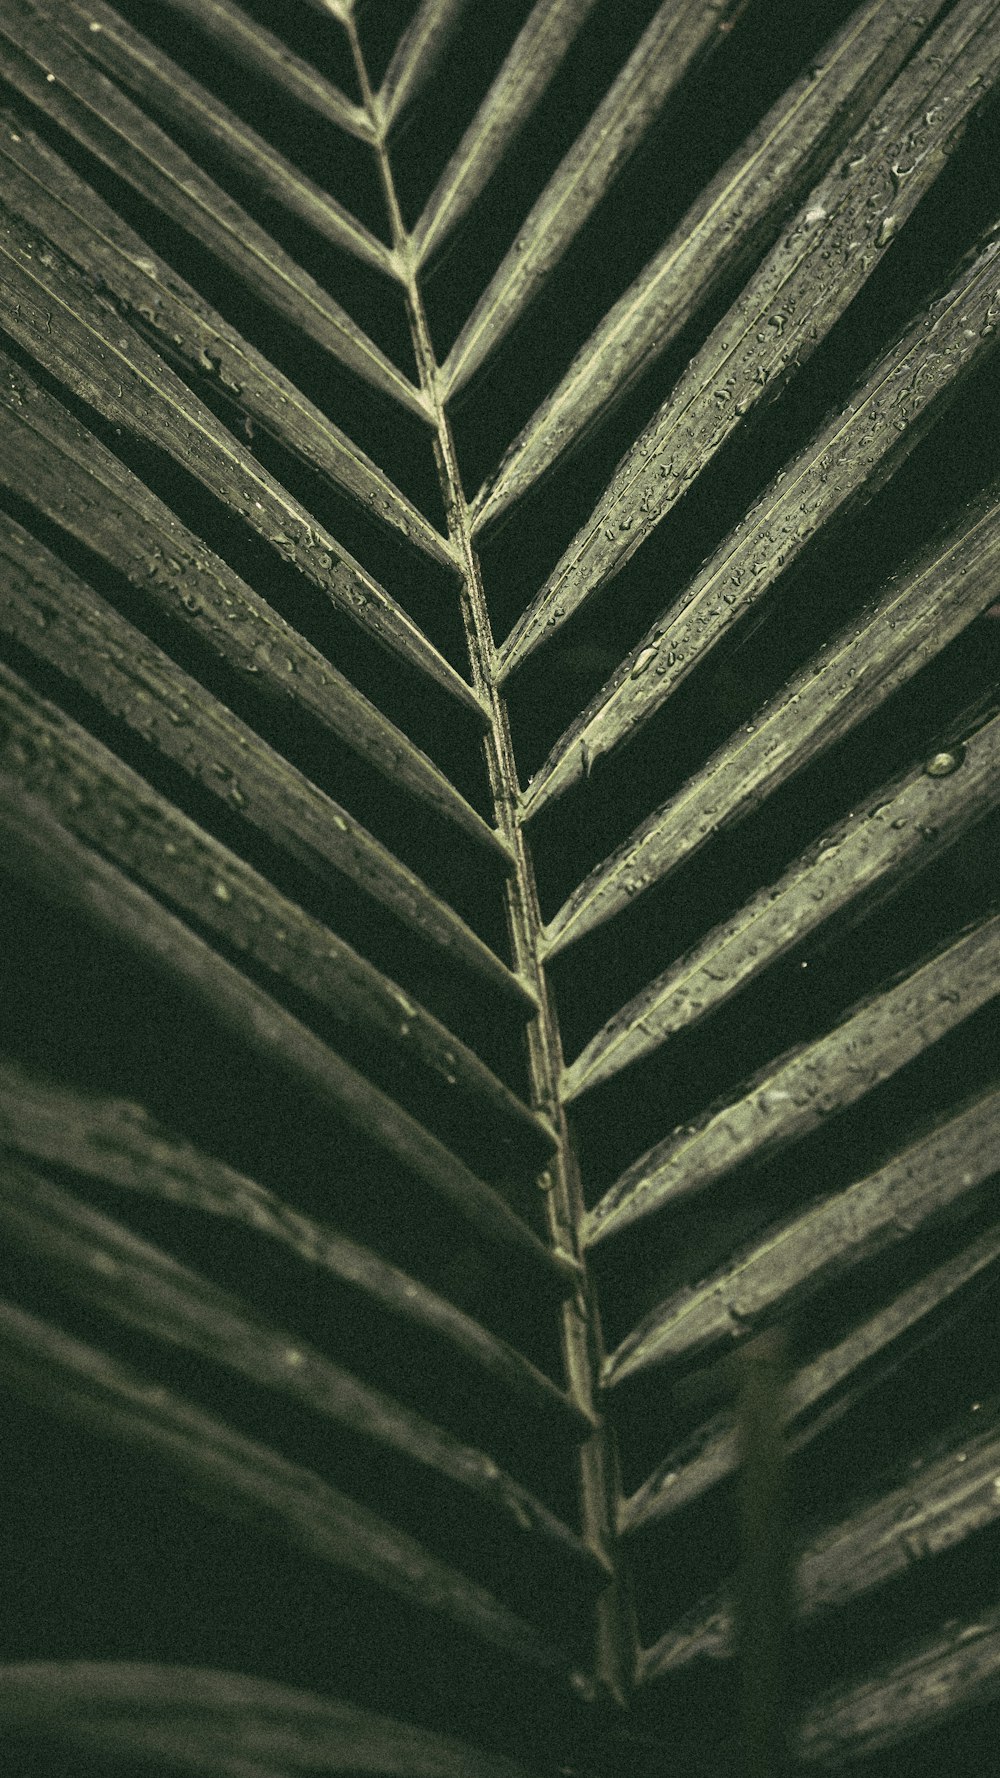 um close up de uma folha de palmeira com gotas de água sobre ela